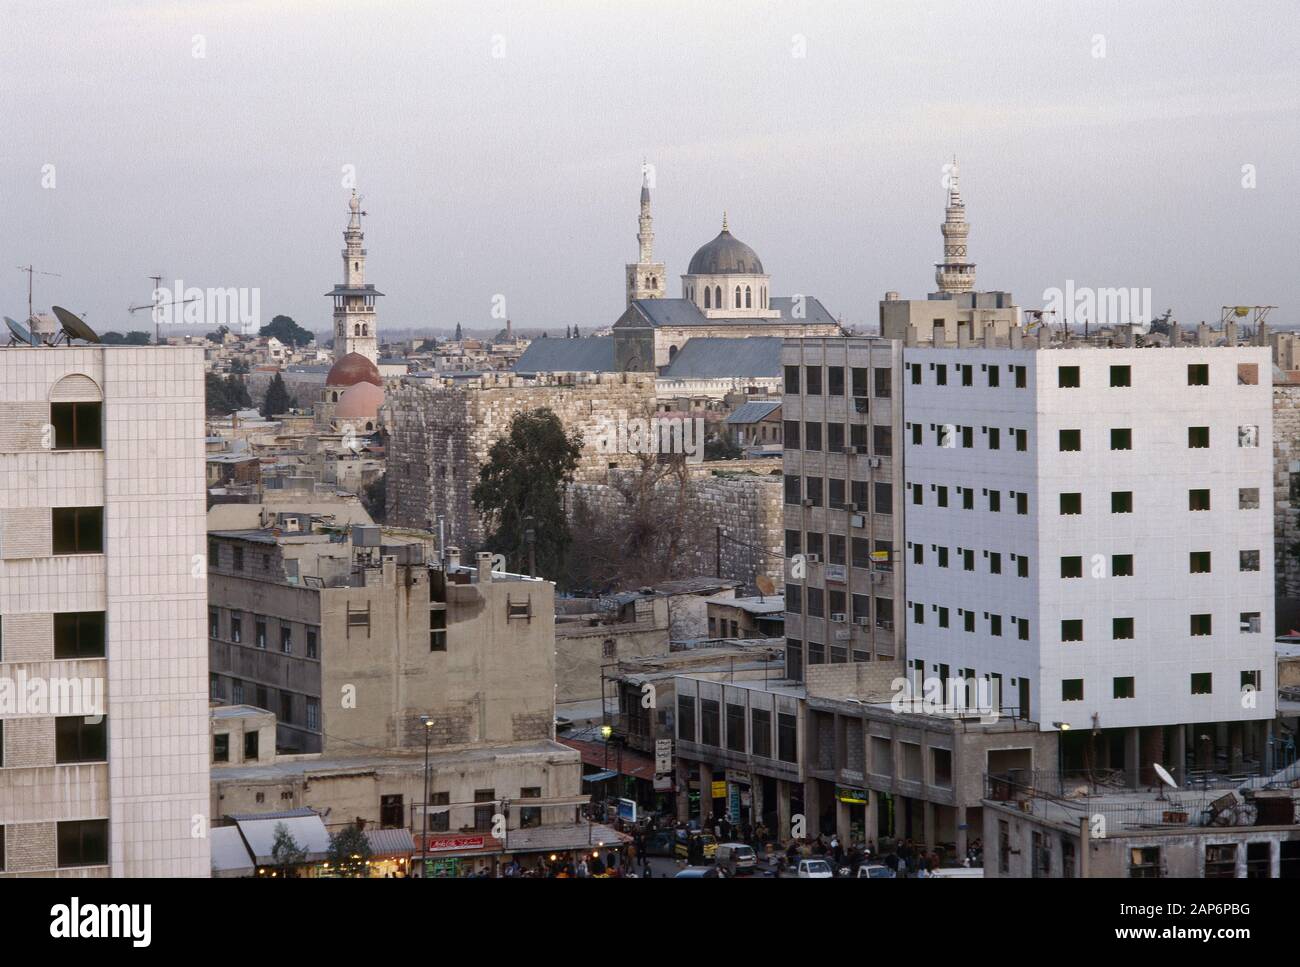 République arabe syrienne. Damas. Aspect de la ville au coucher du soleil. Photo prise avant la guerre civile en Syrie. Banque D'Images